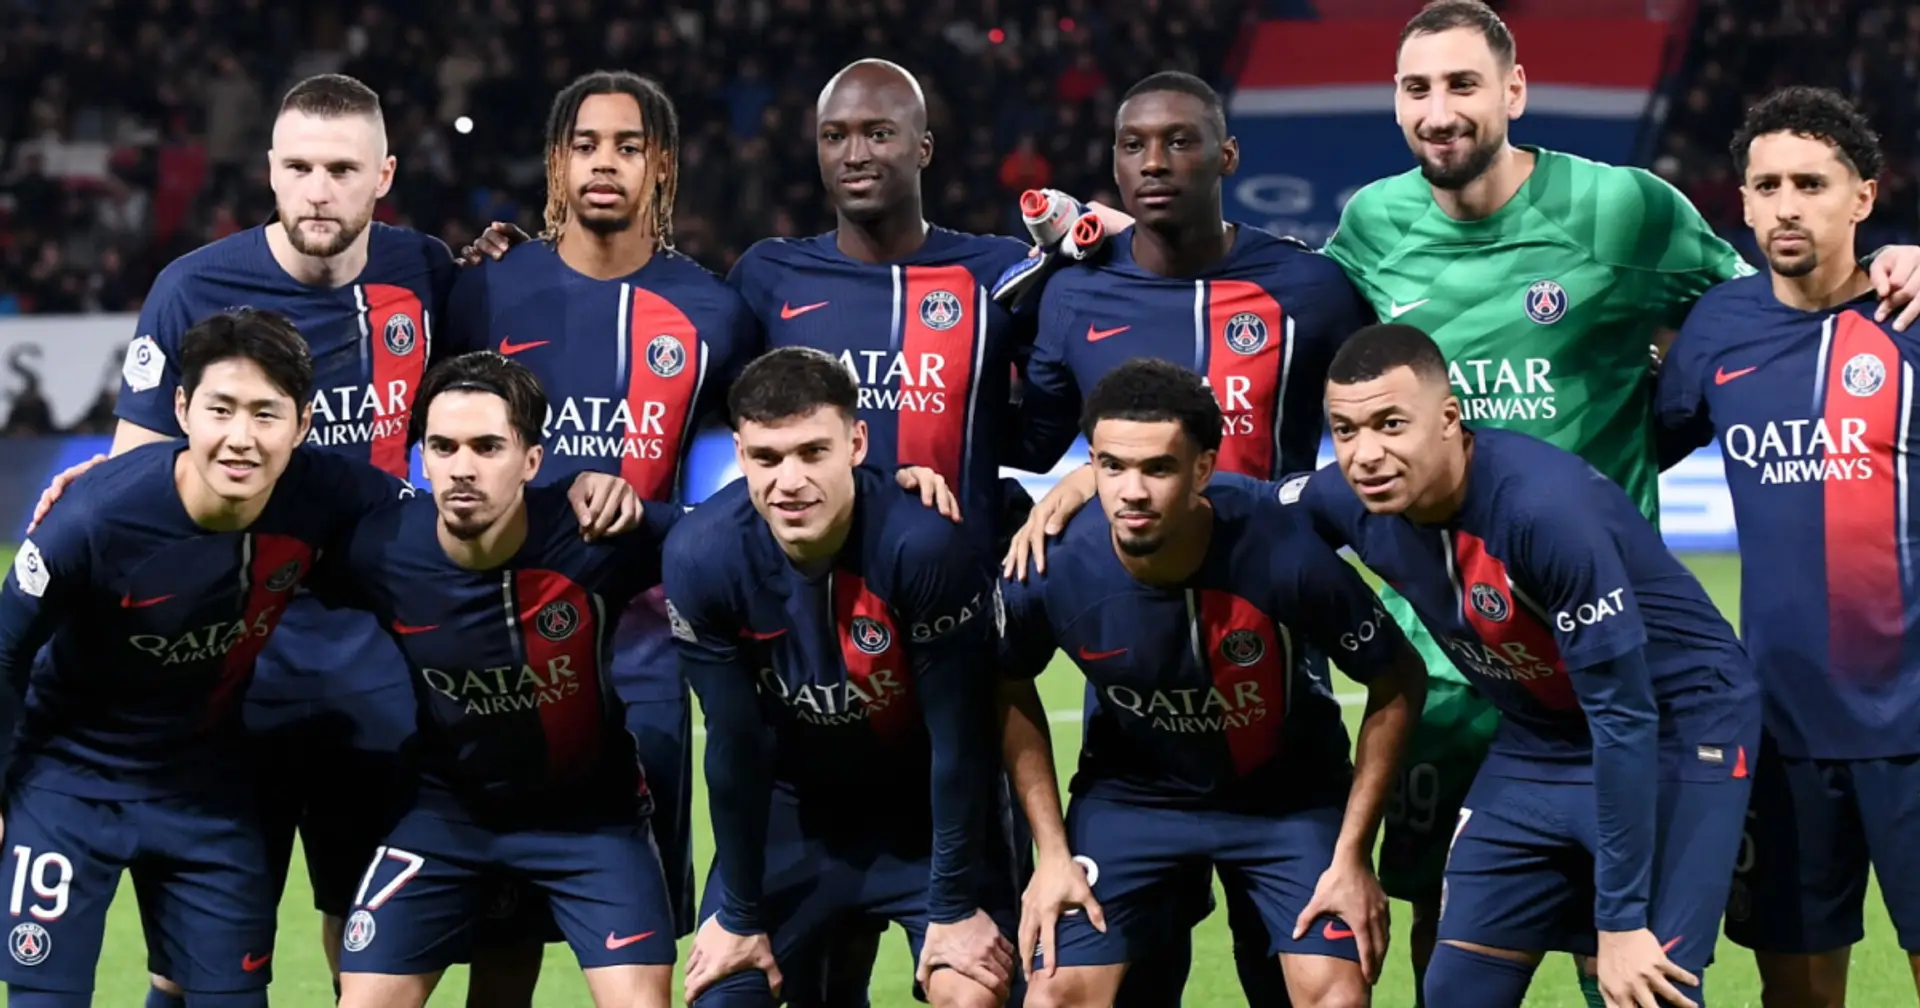 "Pas complètement mort": un journaliste français fan du PSG évalue les chances d'une éventuelle remontada vs Barça